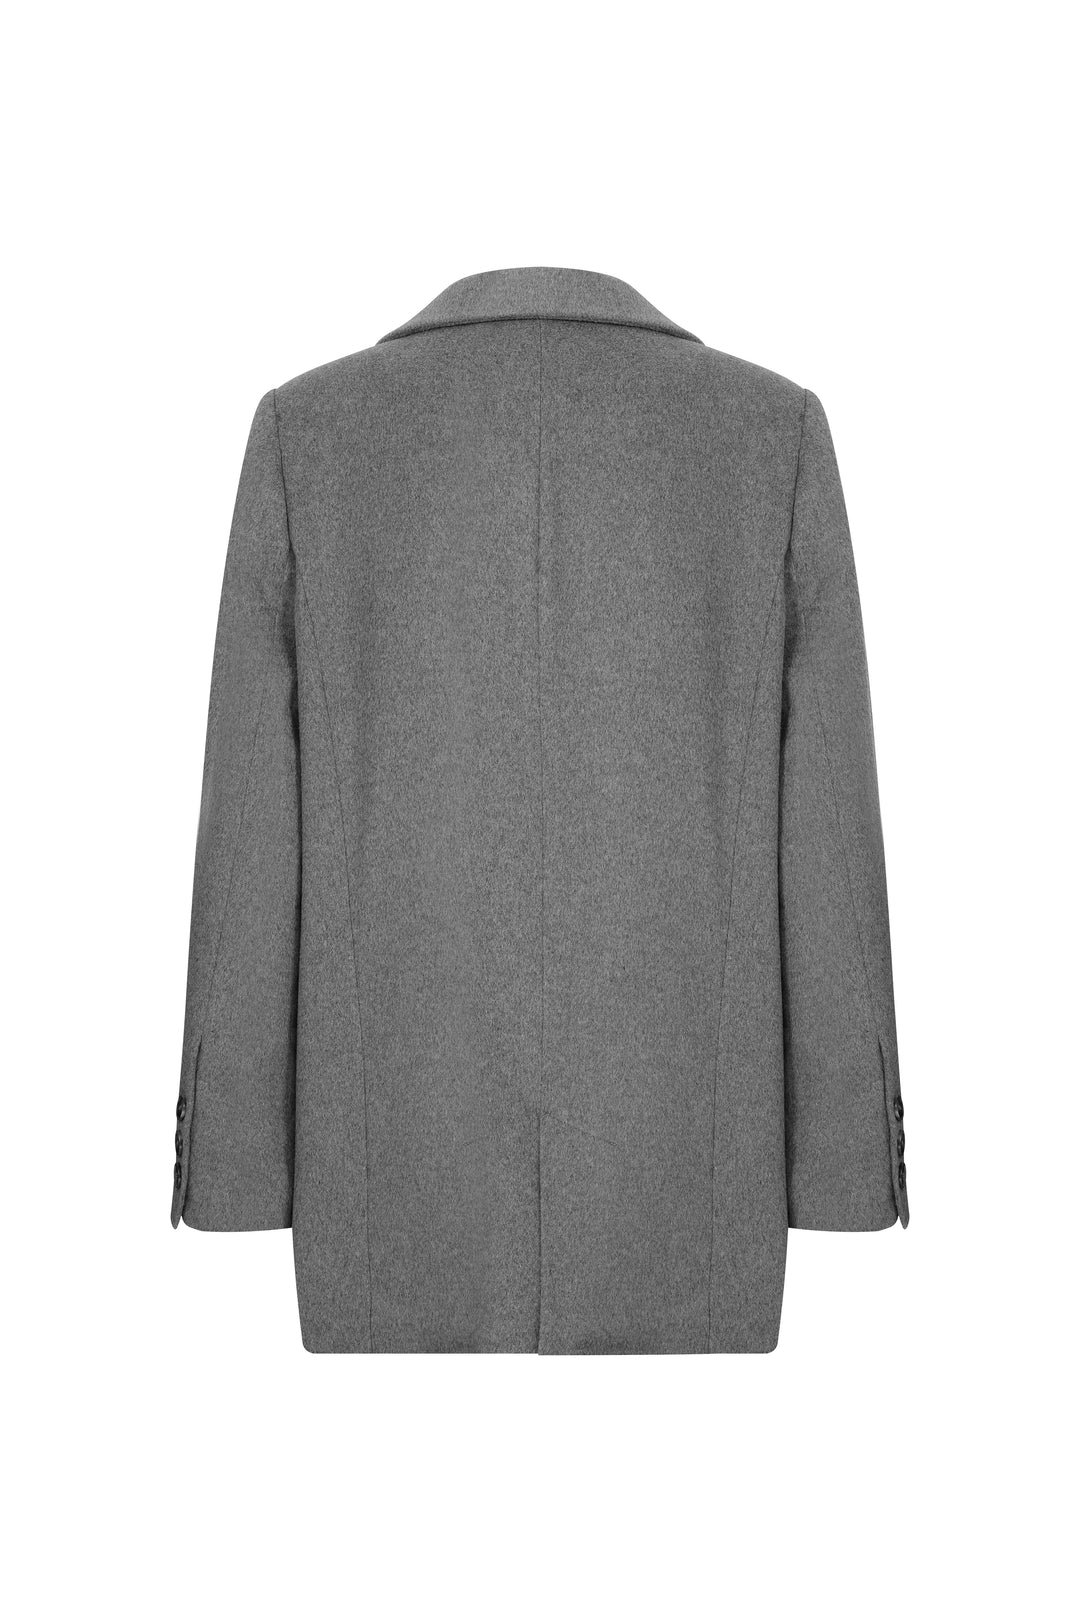 ROY - Gri Oversize Yün Blazer Ceket